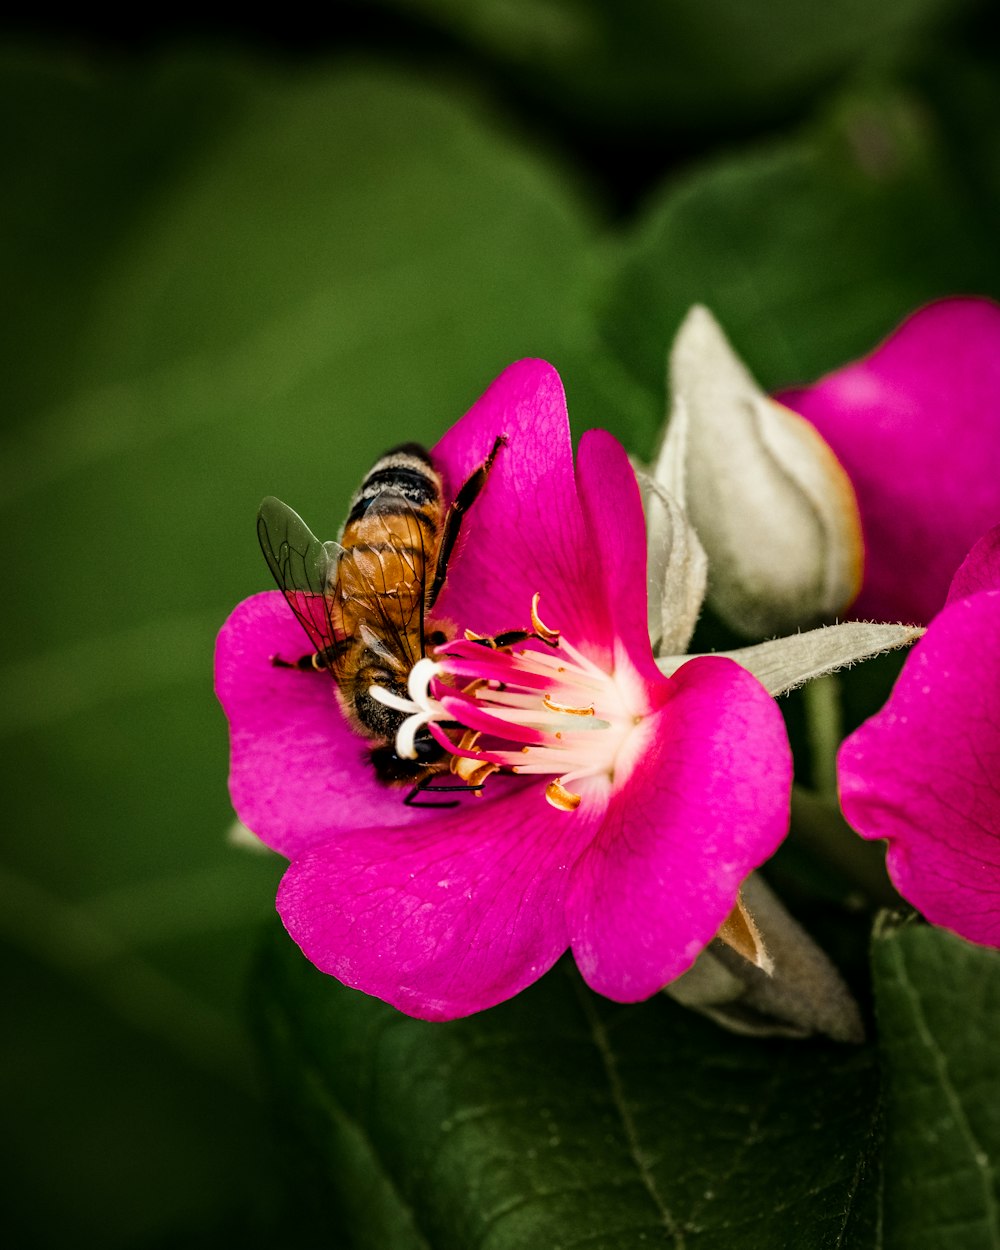 abeille perchée sur la fleur rose en gros plan photographie pendant la journée